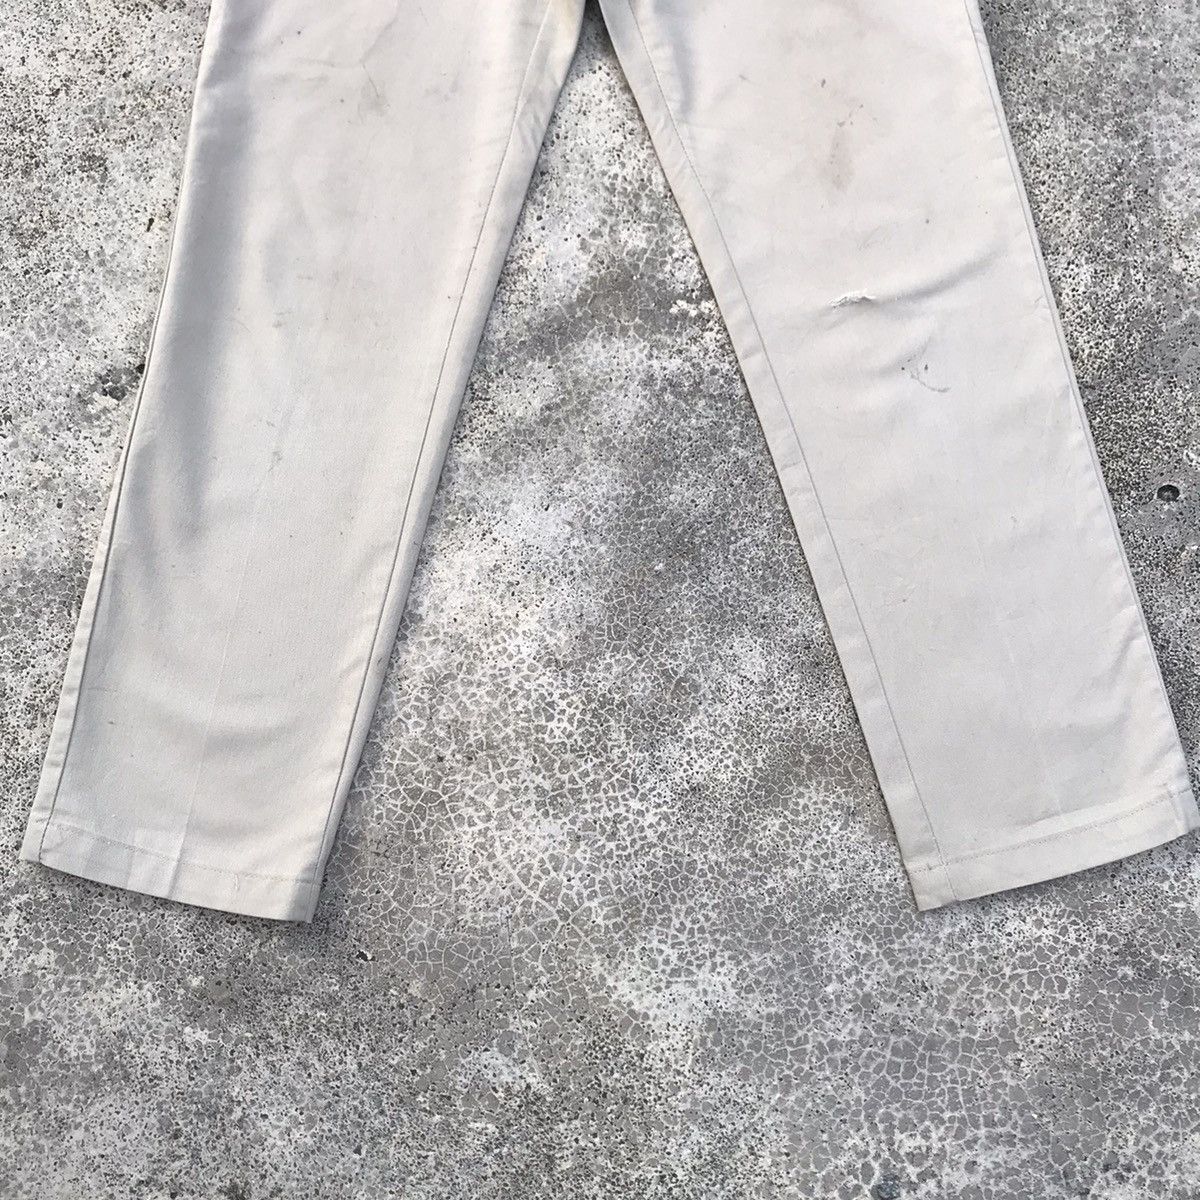 Dickies Trousers Dickies Pants Vtg Streetwear Japanese Branded Size US 28 / EU 44 - 3 Thumbnail